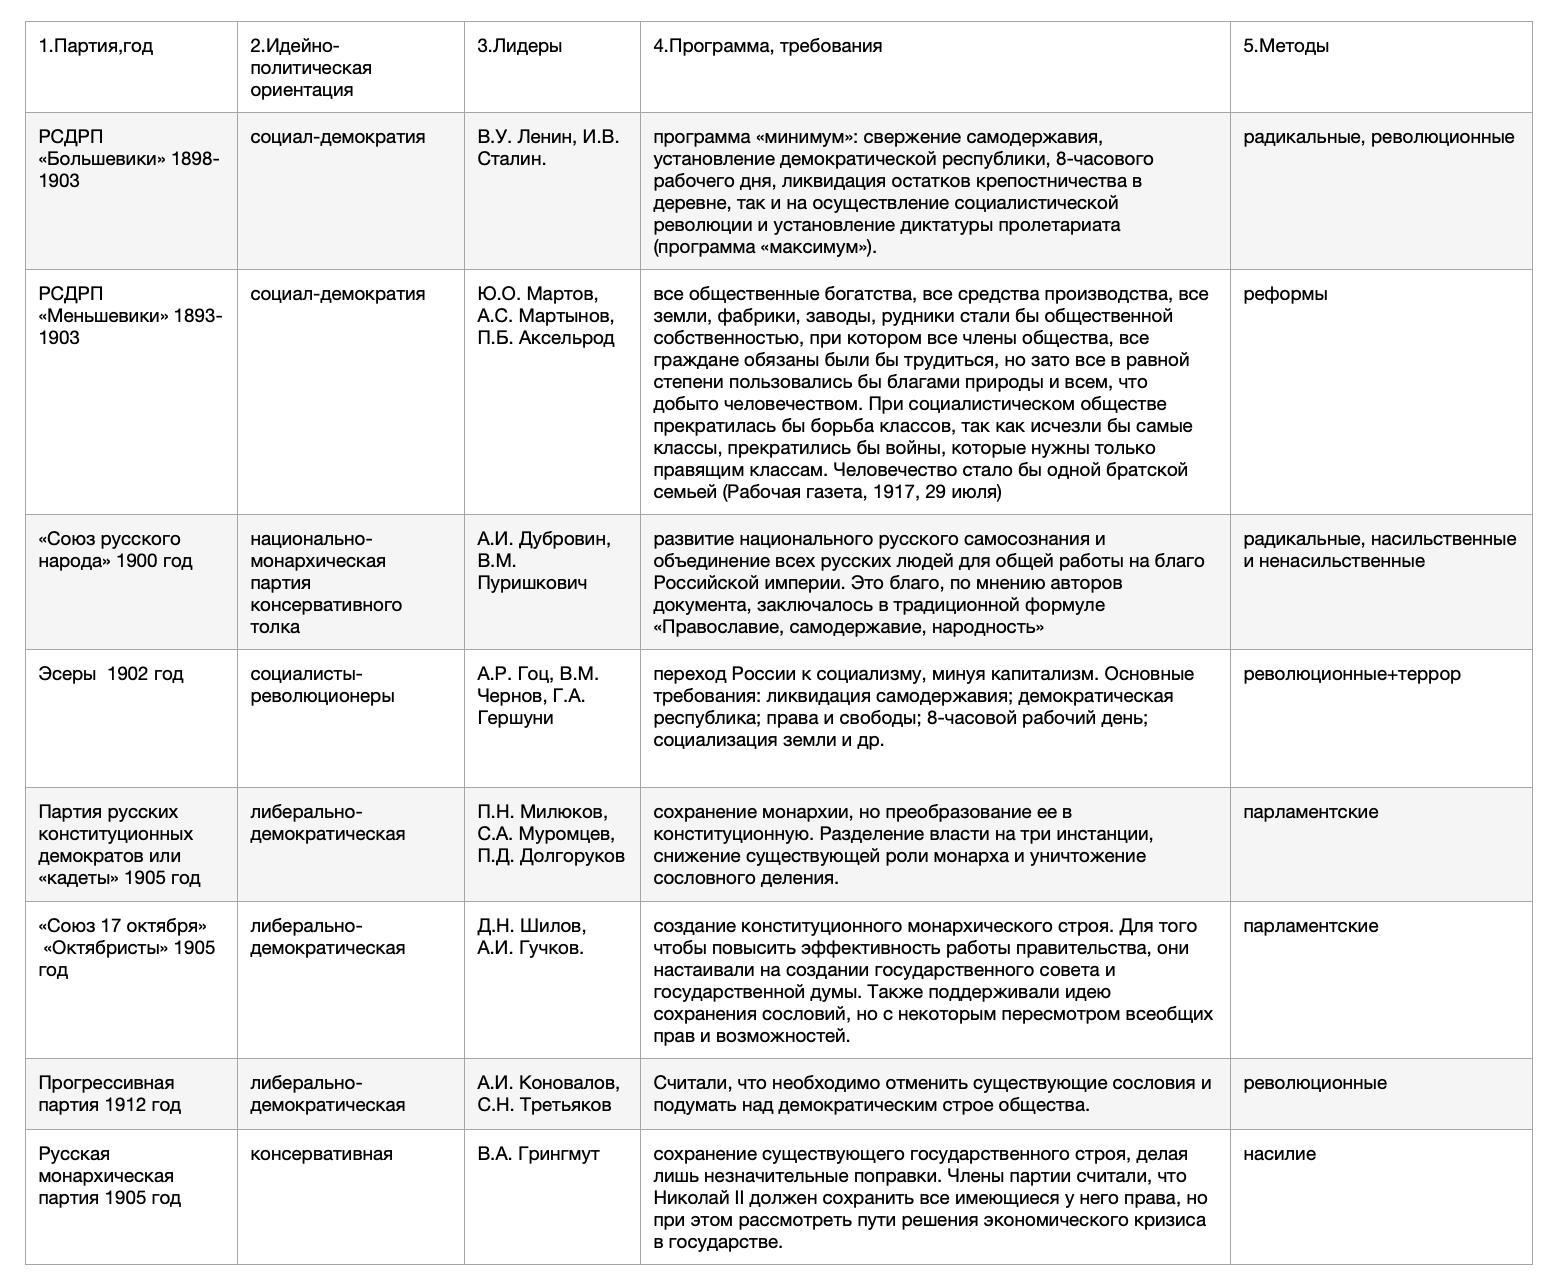 Политические партии в России в начале 20 века таблица по истории